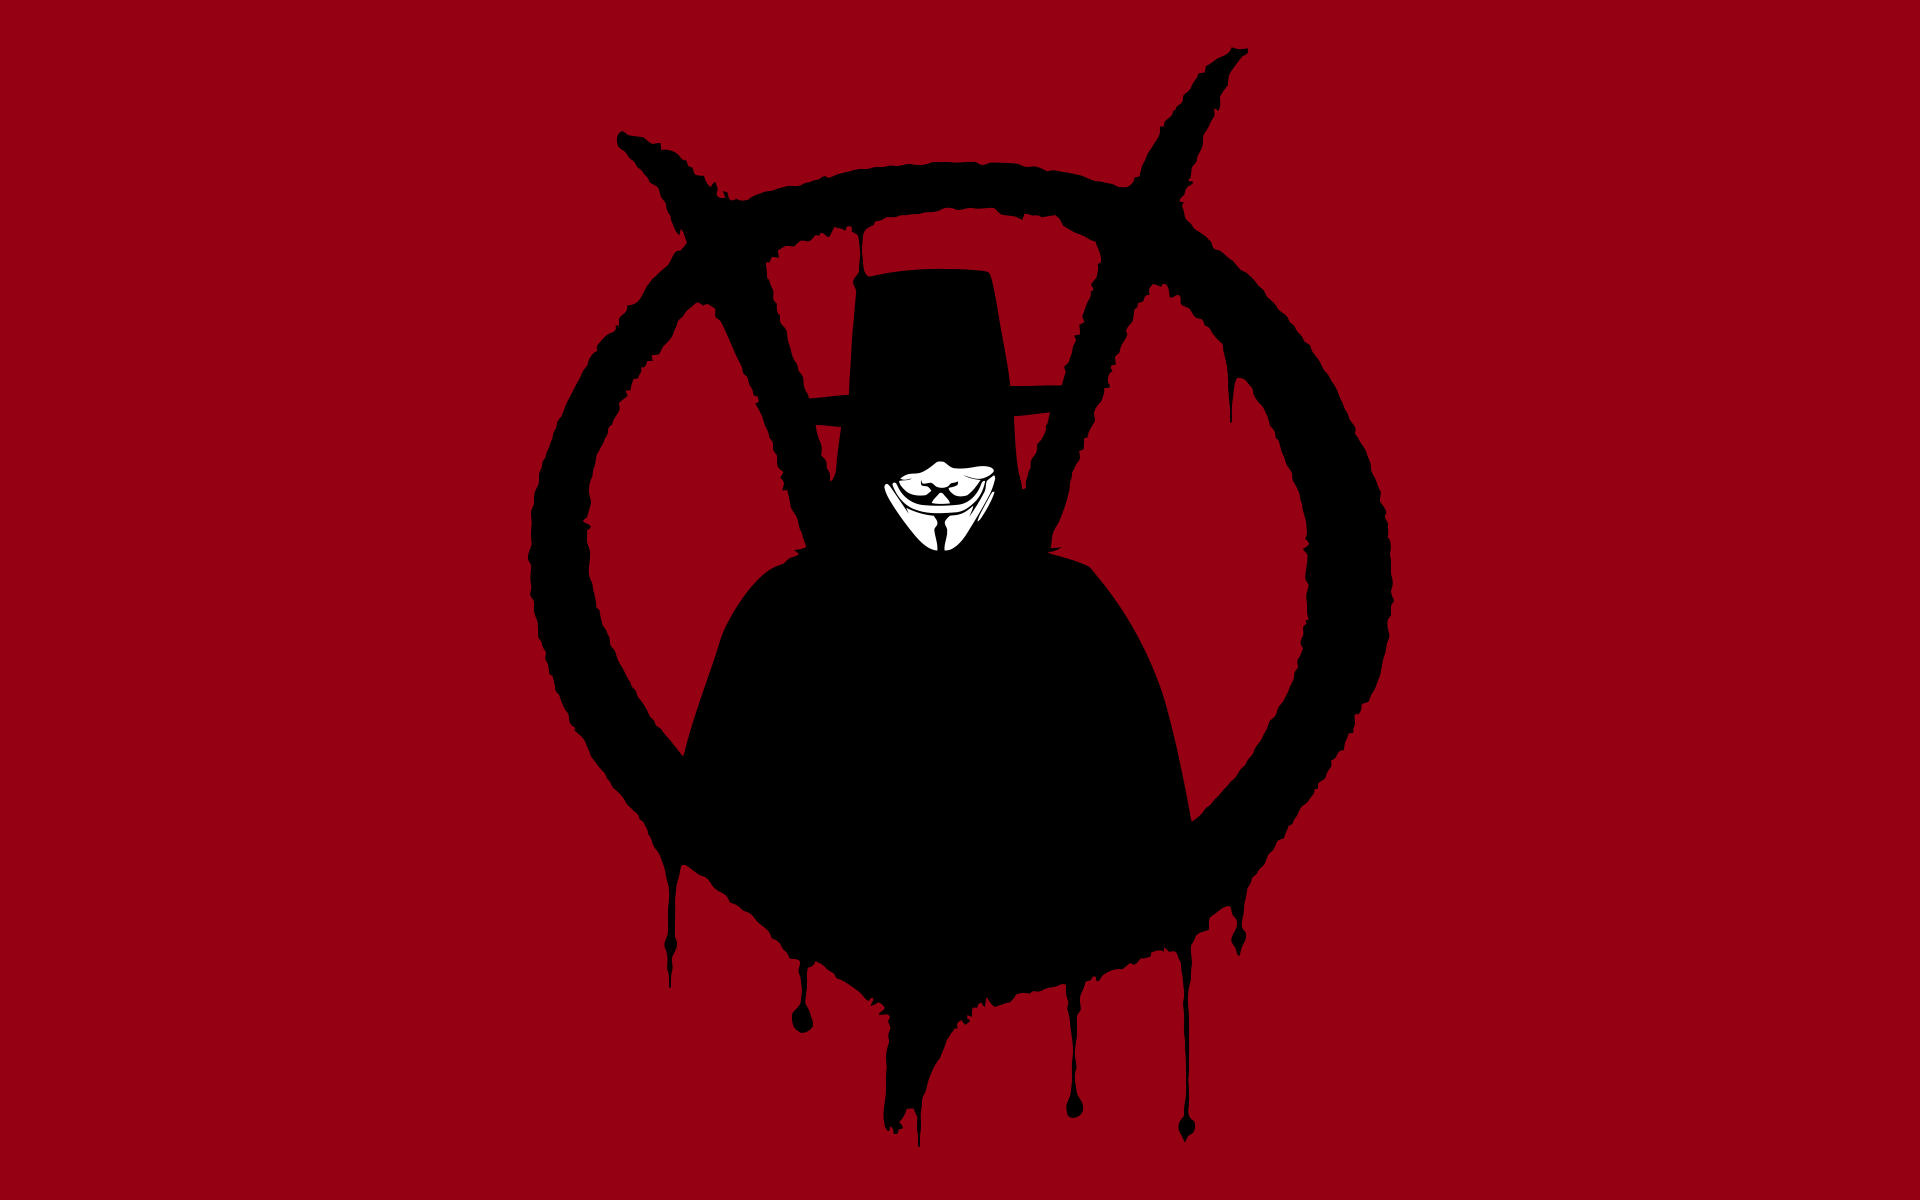 V for Vendetta Wallpaper / WallpaperJam.com